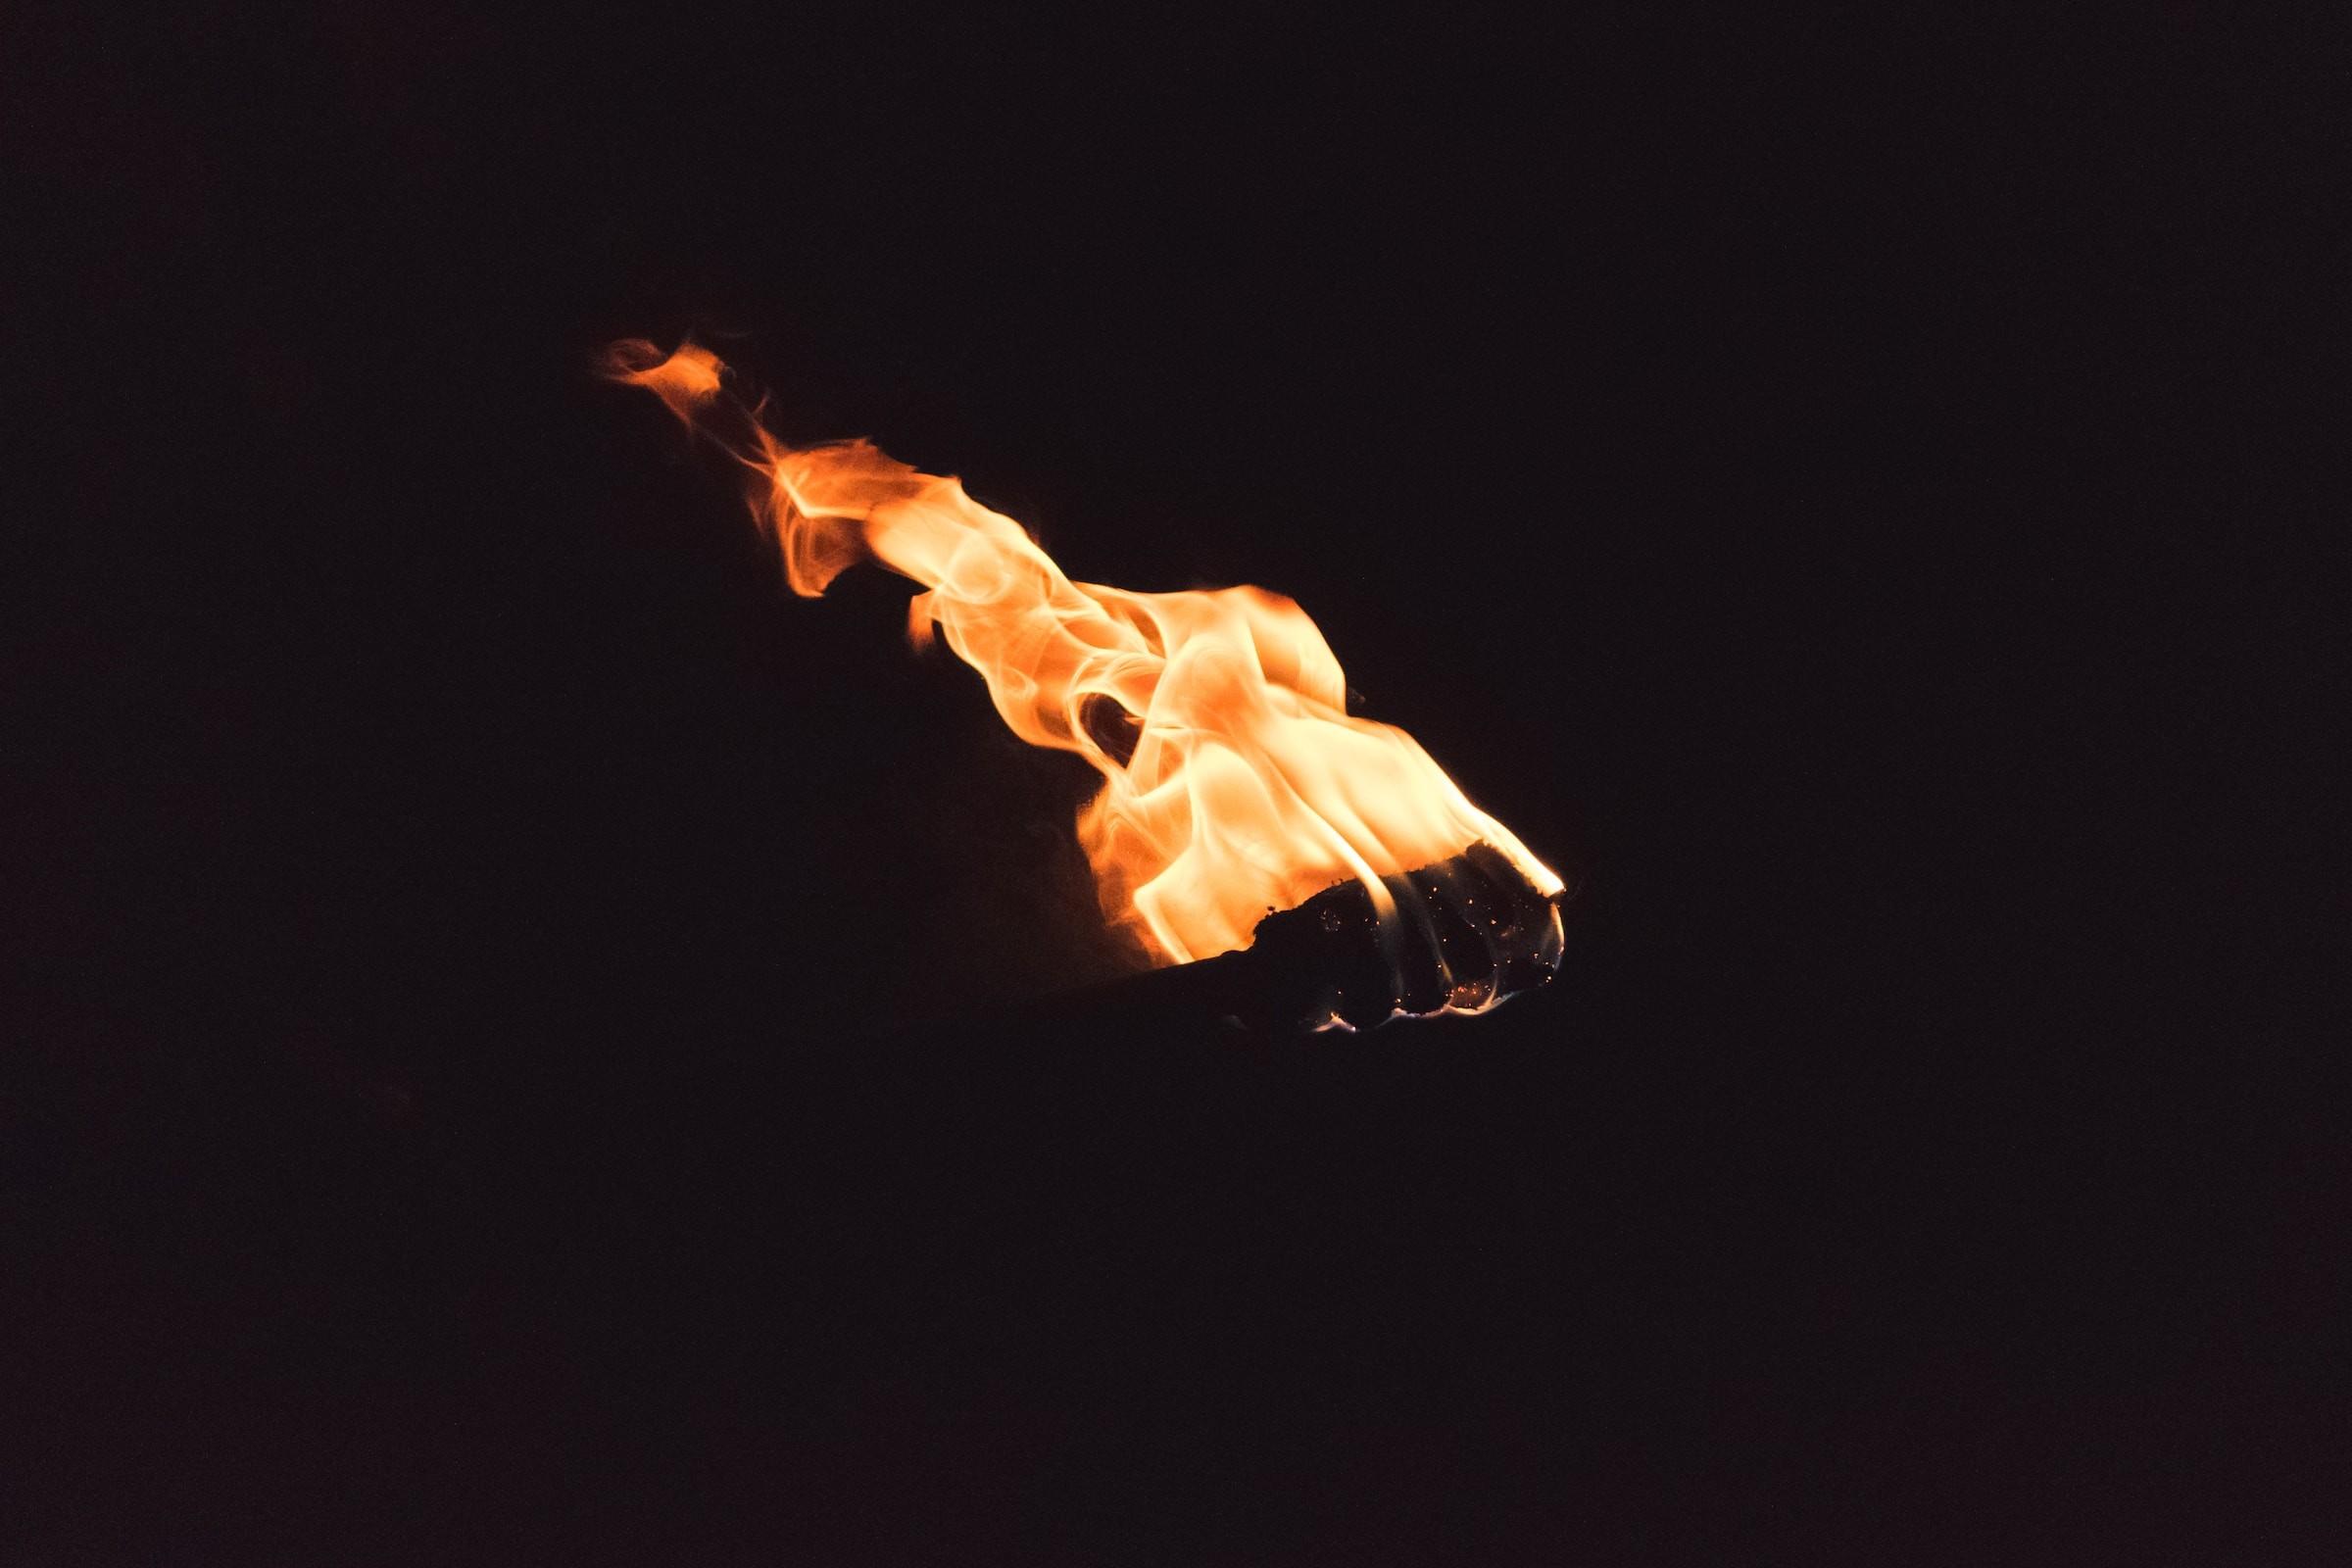 Brennende Fackel in der Nacht